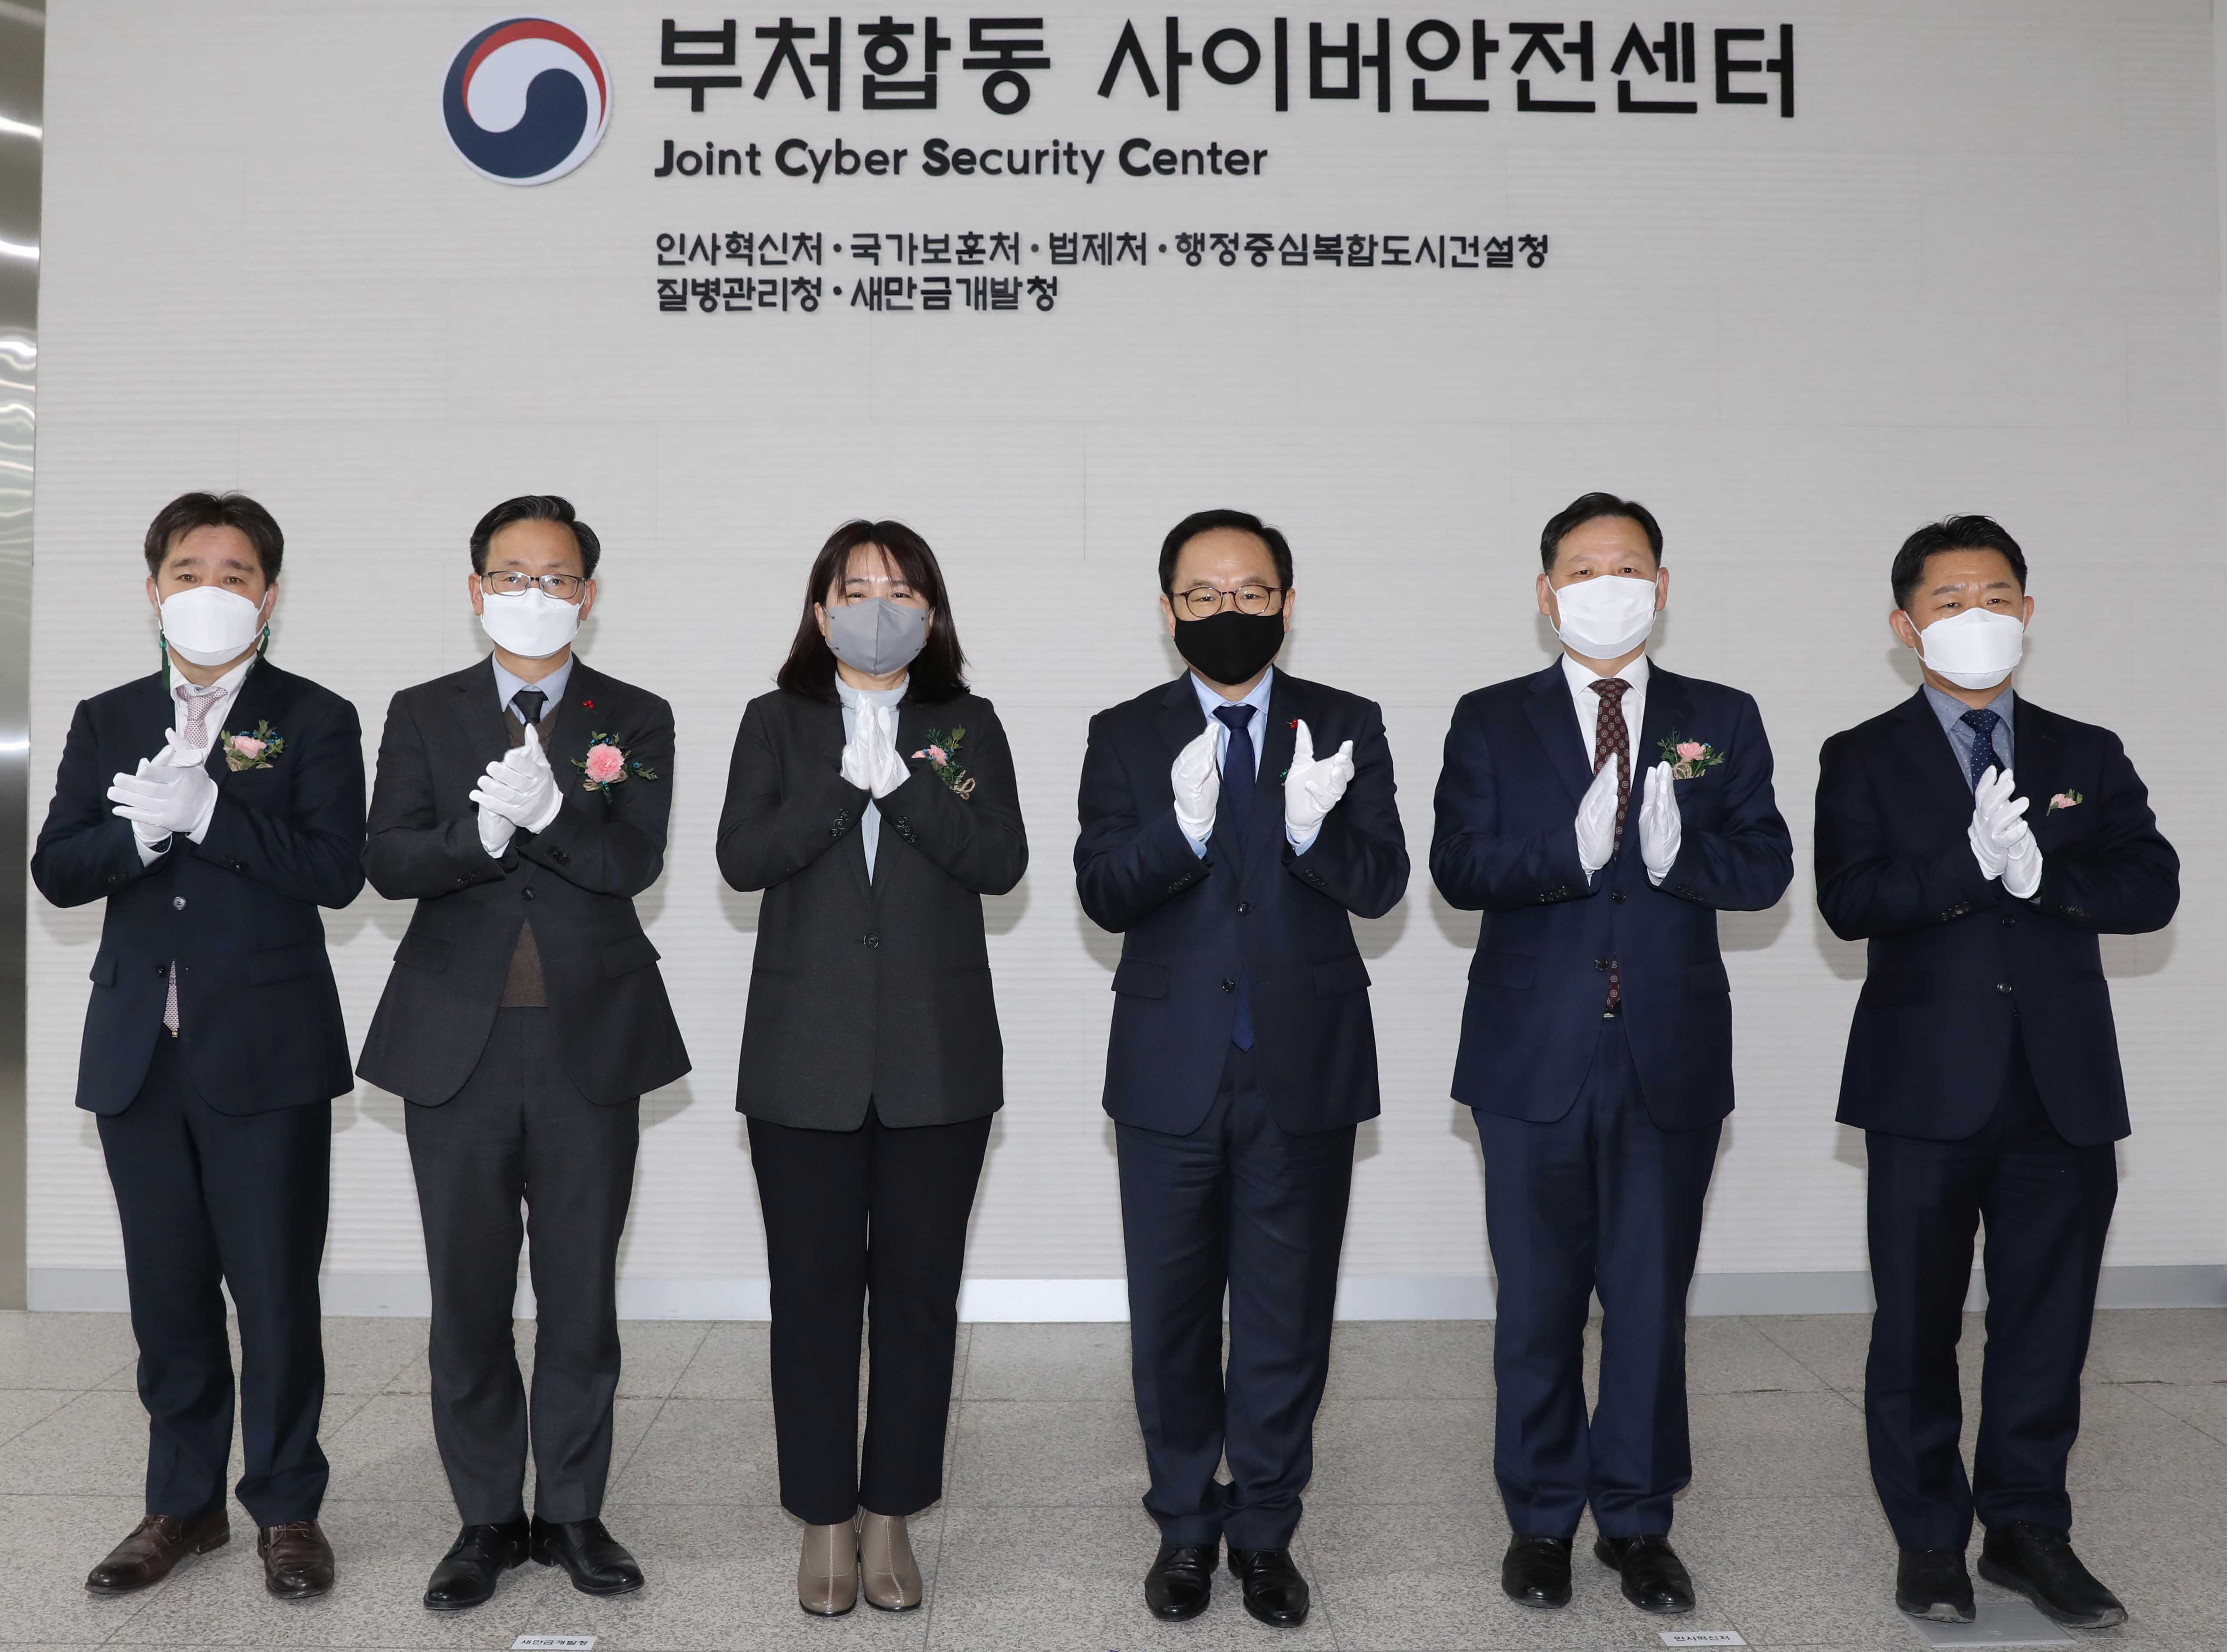 김승호 인사혁신처장이 12월 15일 세종시 정부세종컨벤션센터에서 열린 '부처합동 사이버안전센터 확대 개소식'에서 기념촬영 하는 모습